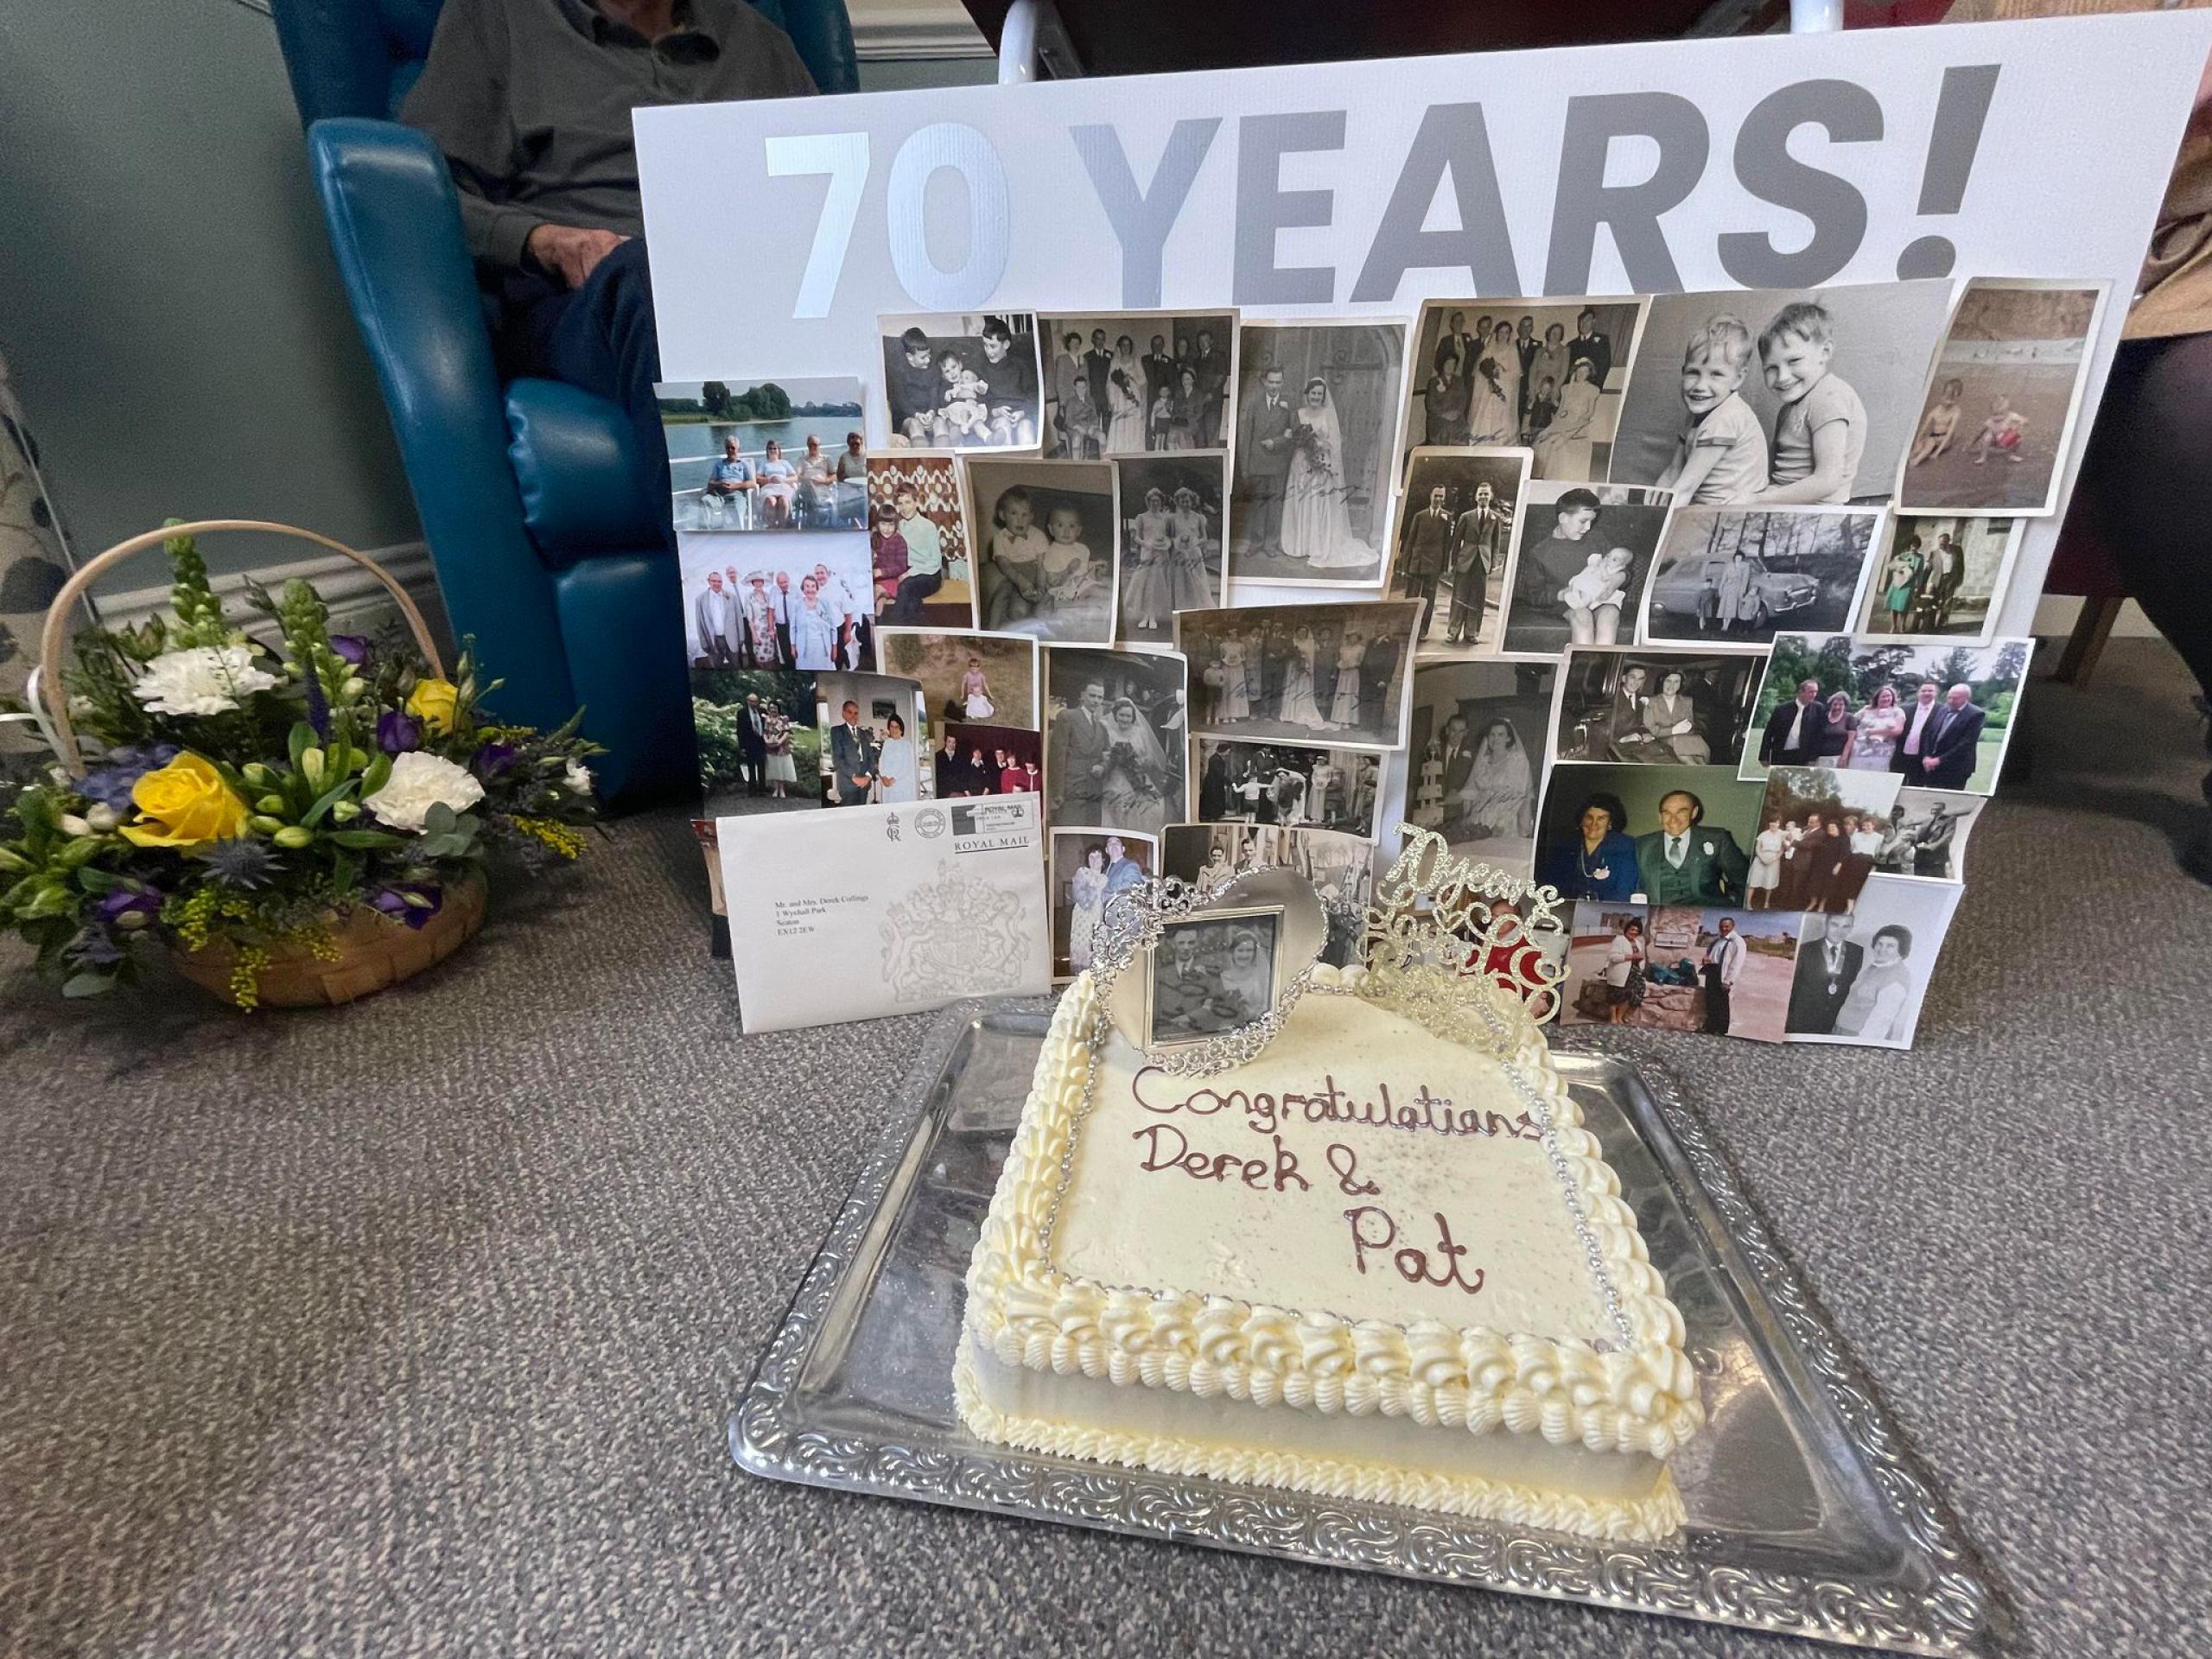 Anniversary Cake Celebrate 70 Years Marriage Stock Photo 2320308885 |  Shutterstock